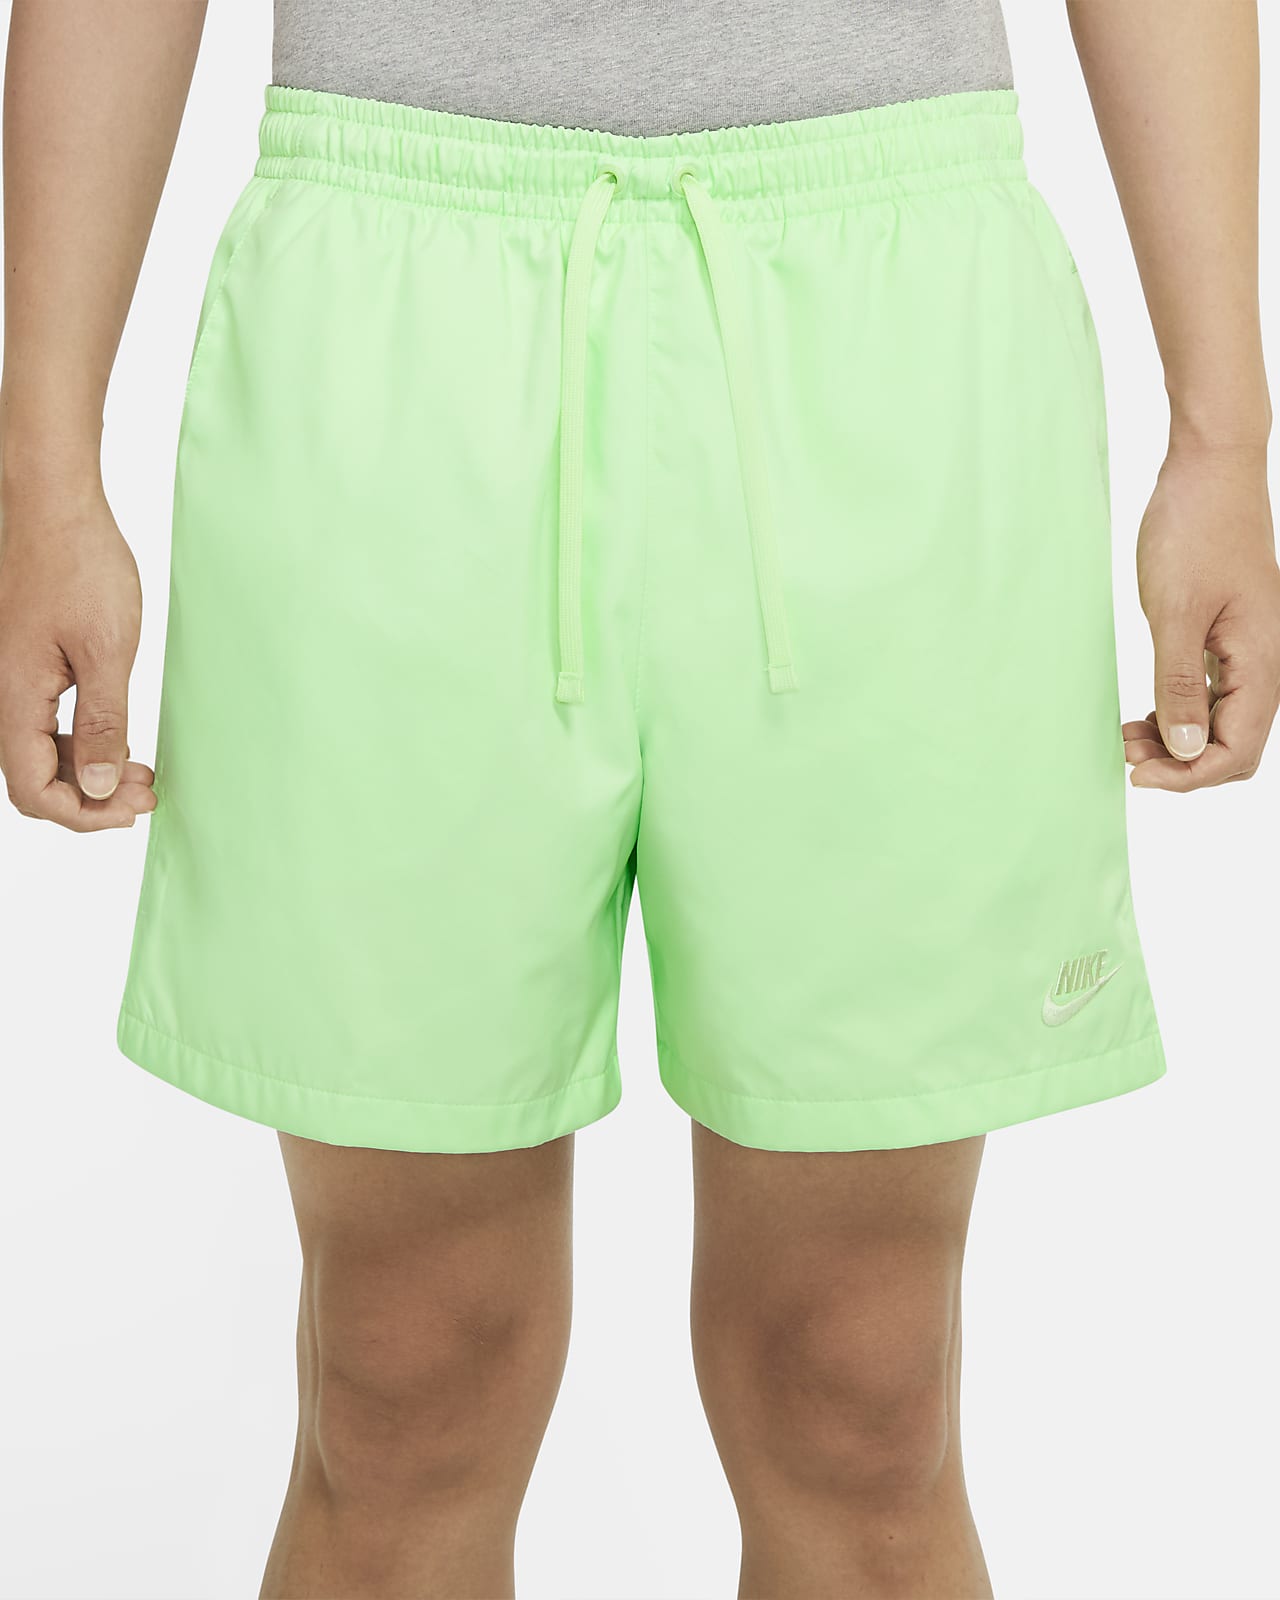 nike green woven shorts